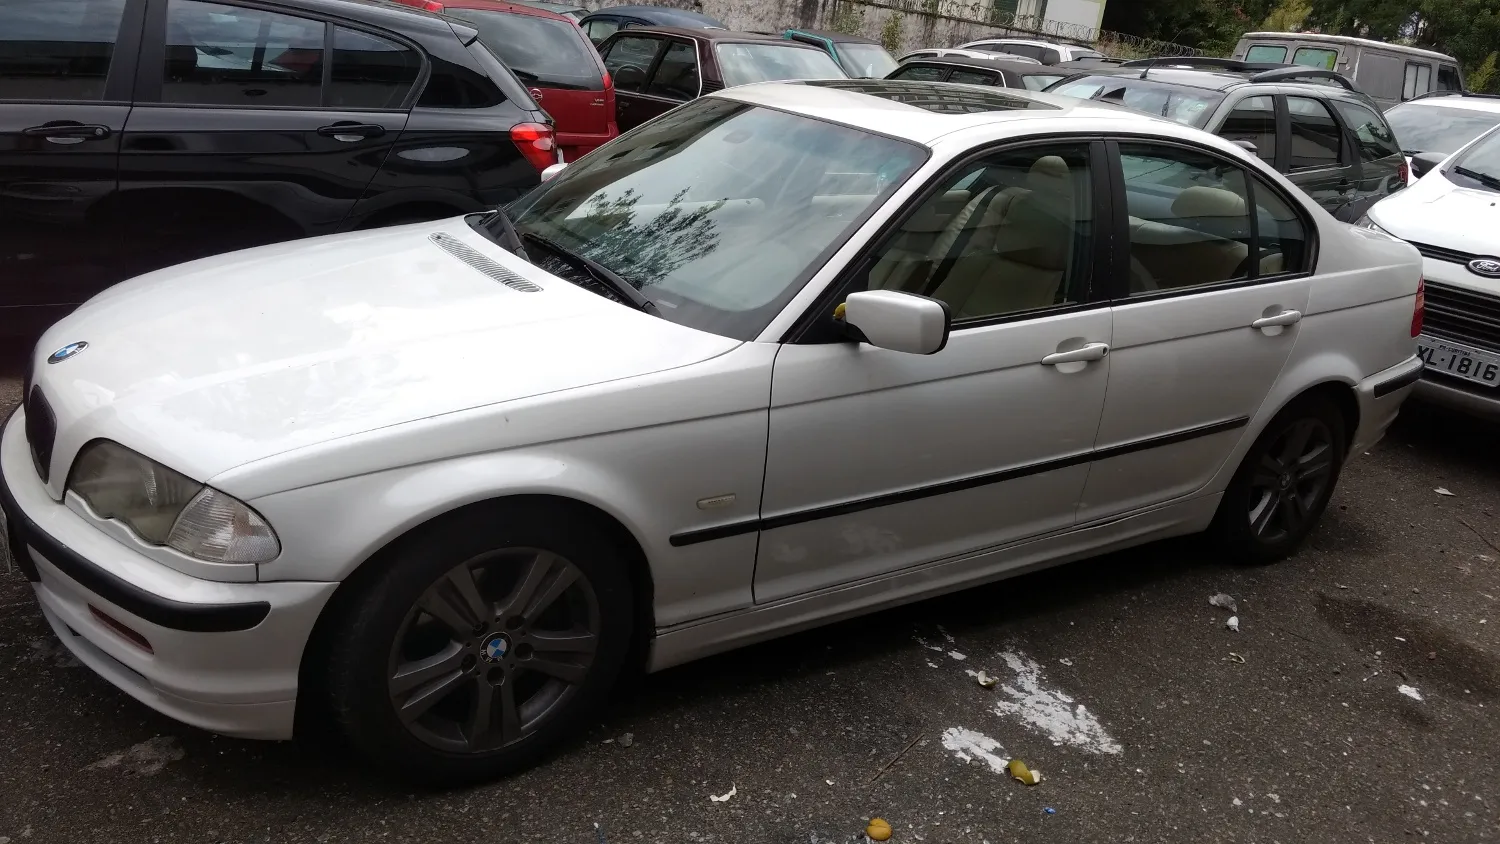 Polícia prende suspeito de envolvimento em roubos de 150 carros e recupera 3 BMWs em Curitiba